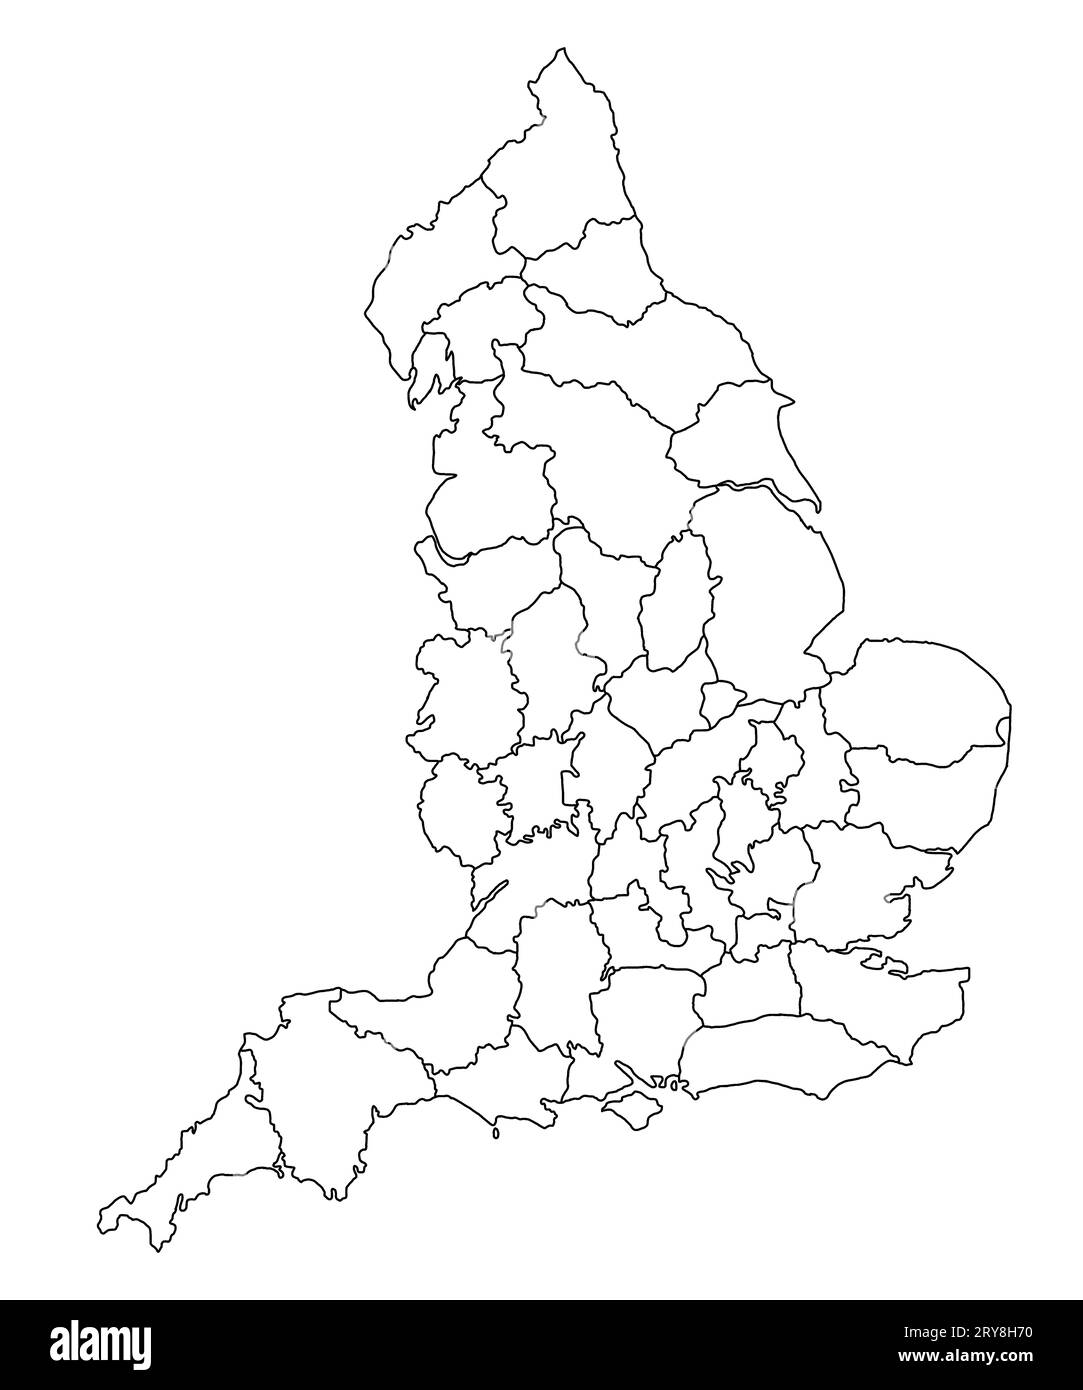 Landkarte von England auf weißem Hintergrund. Landkarte mit schwarzer Farbmarkierung auf der englischen Verwaltungskarte. Großbritannien, Großbritannien, Großbritannien Stockfoto